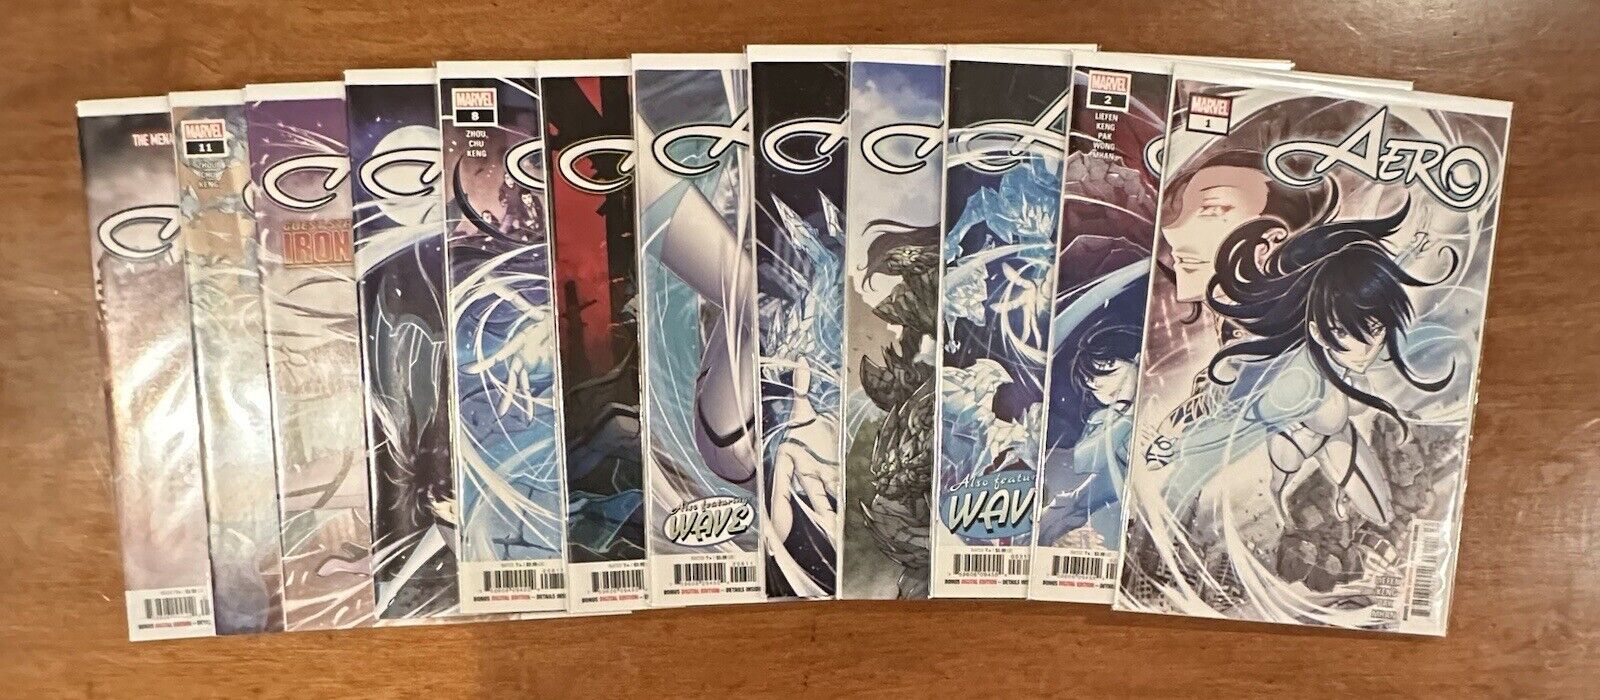 Marvel Comics: Aero Vol. 1 (2021) #1-12 Complete Set